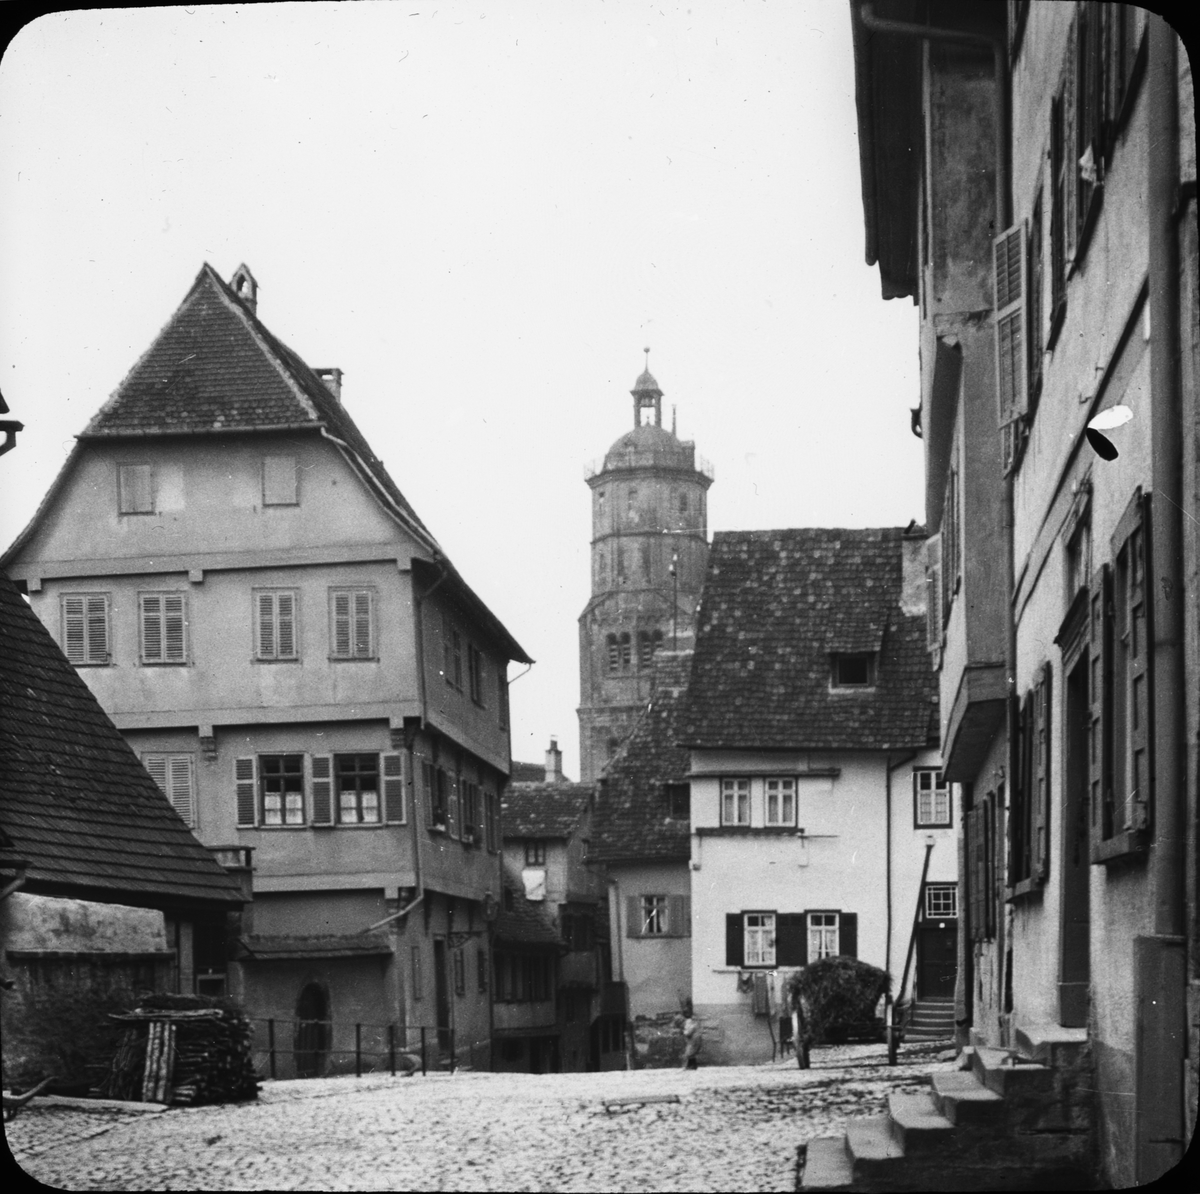 Skioptikonbild med motiv från Schwäbische Hall med kirche St. Michaeli bakgrunden.
Bilden har förvarats i kartong märkt: Resan 1911. Schwäbisch Hall 9. XVI.